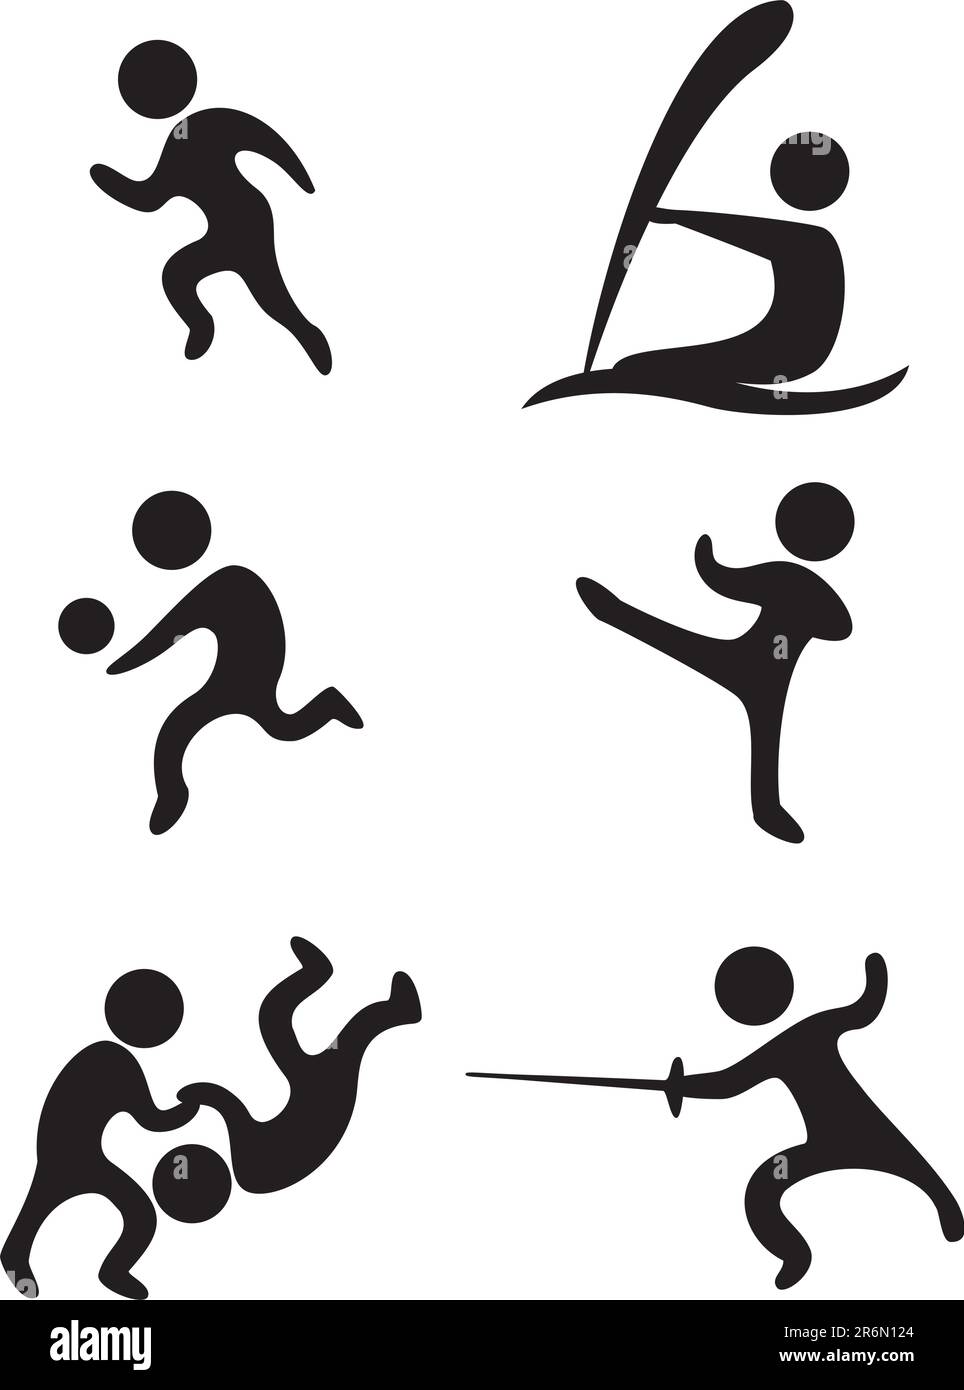 simboli sportivi vettoriali: pallavolo su campo e pista karate wrestling gioco di spada e vela Illustrazione Vettoriale